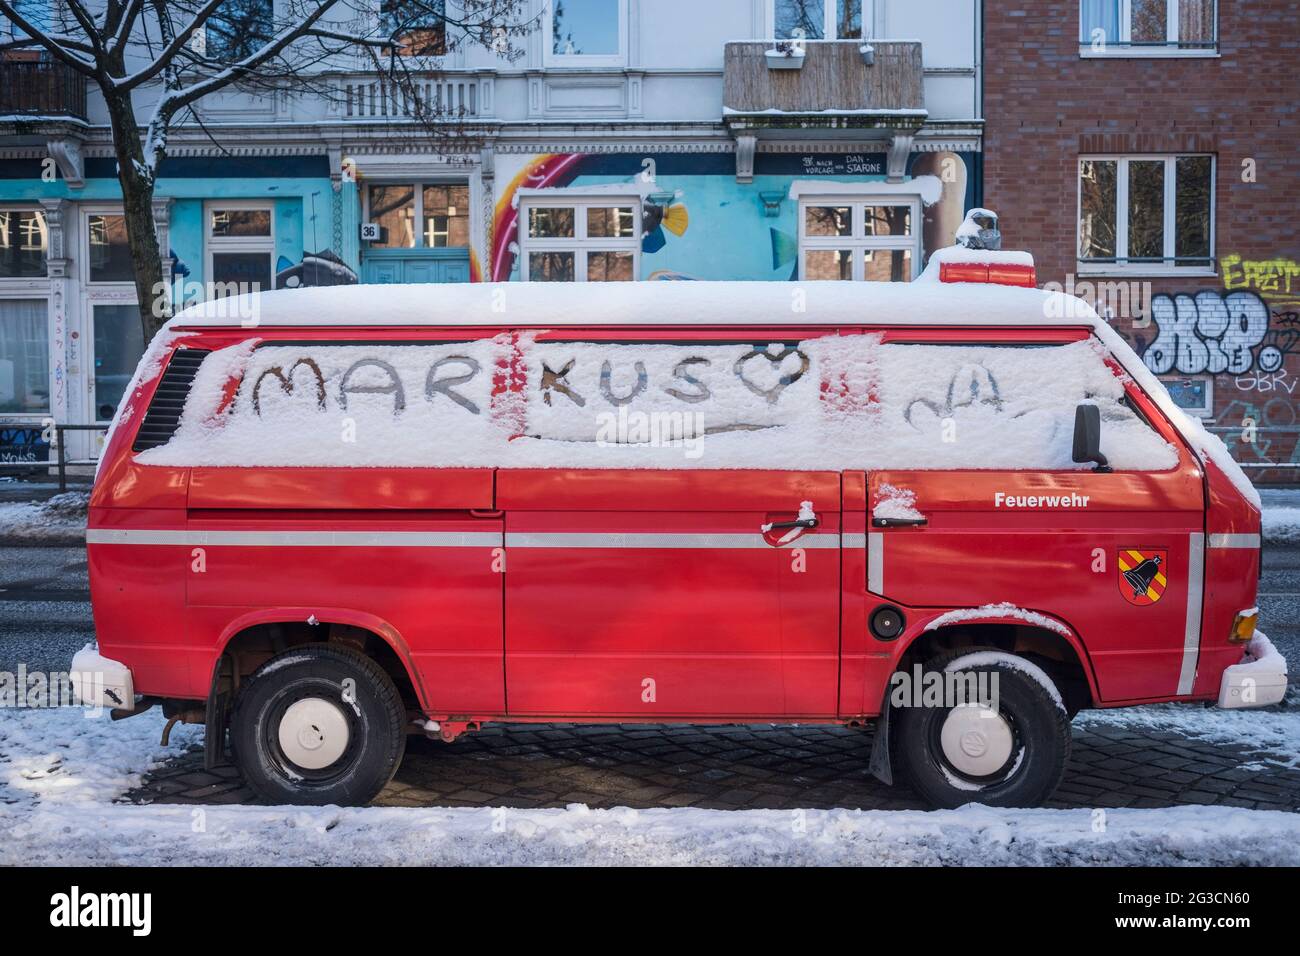 Alter Feuerwehr-Bulli mit Schrifzug 'Markus' im Schnee Foto de stock